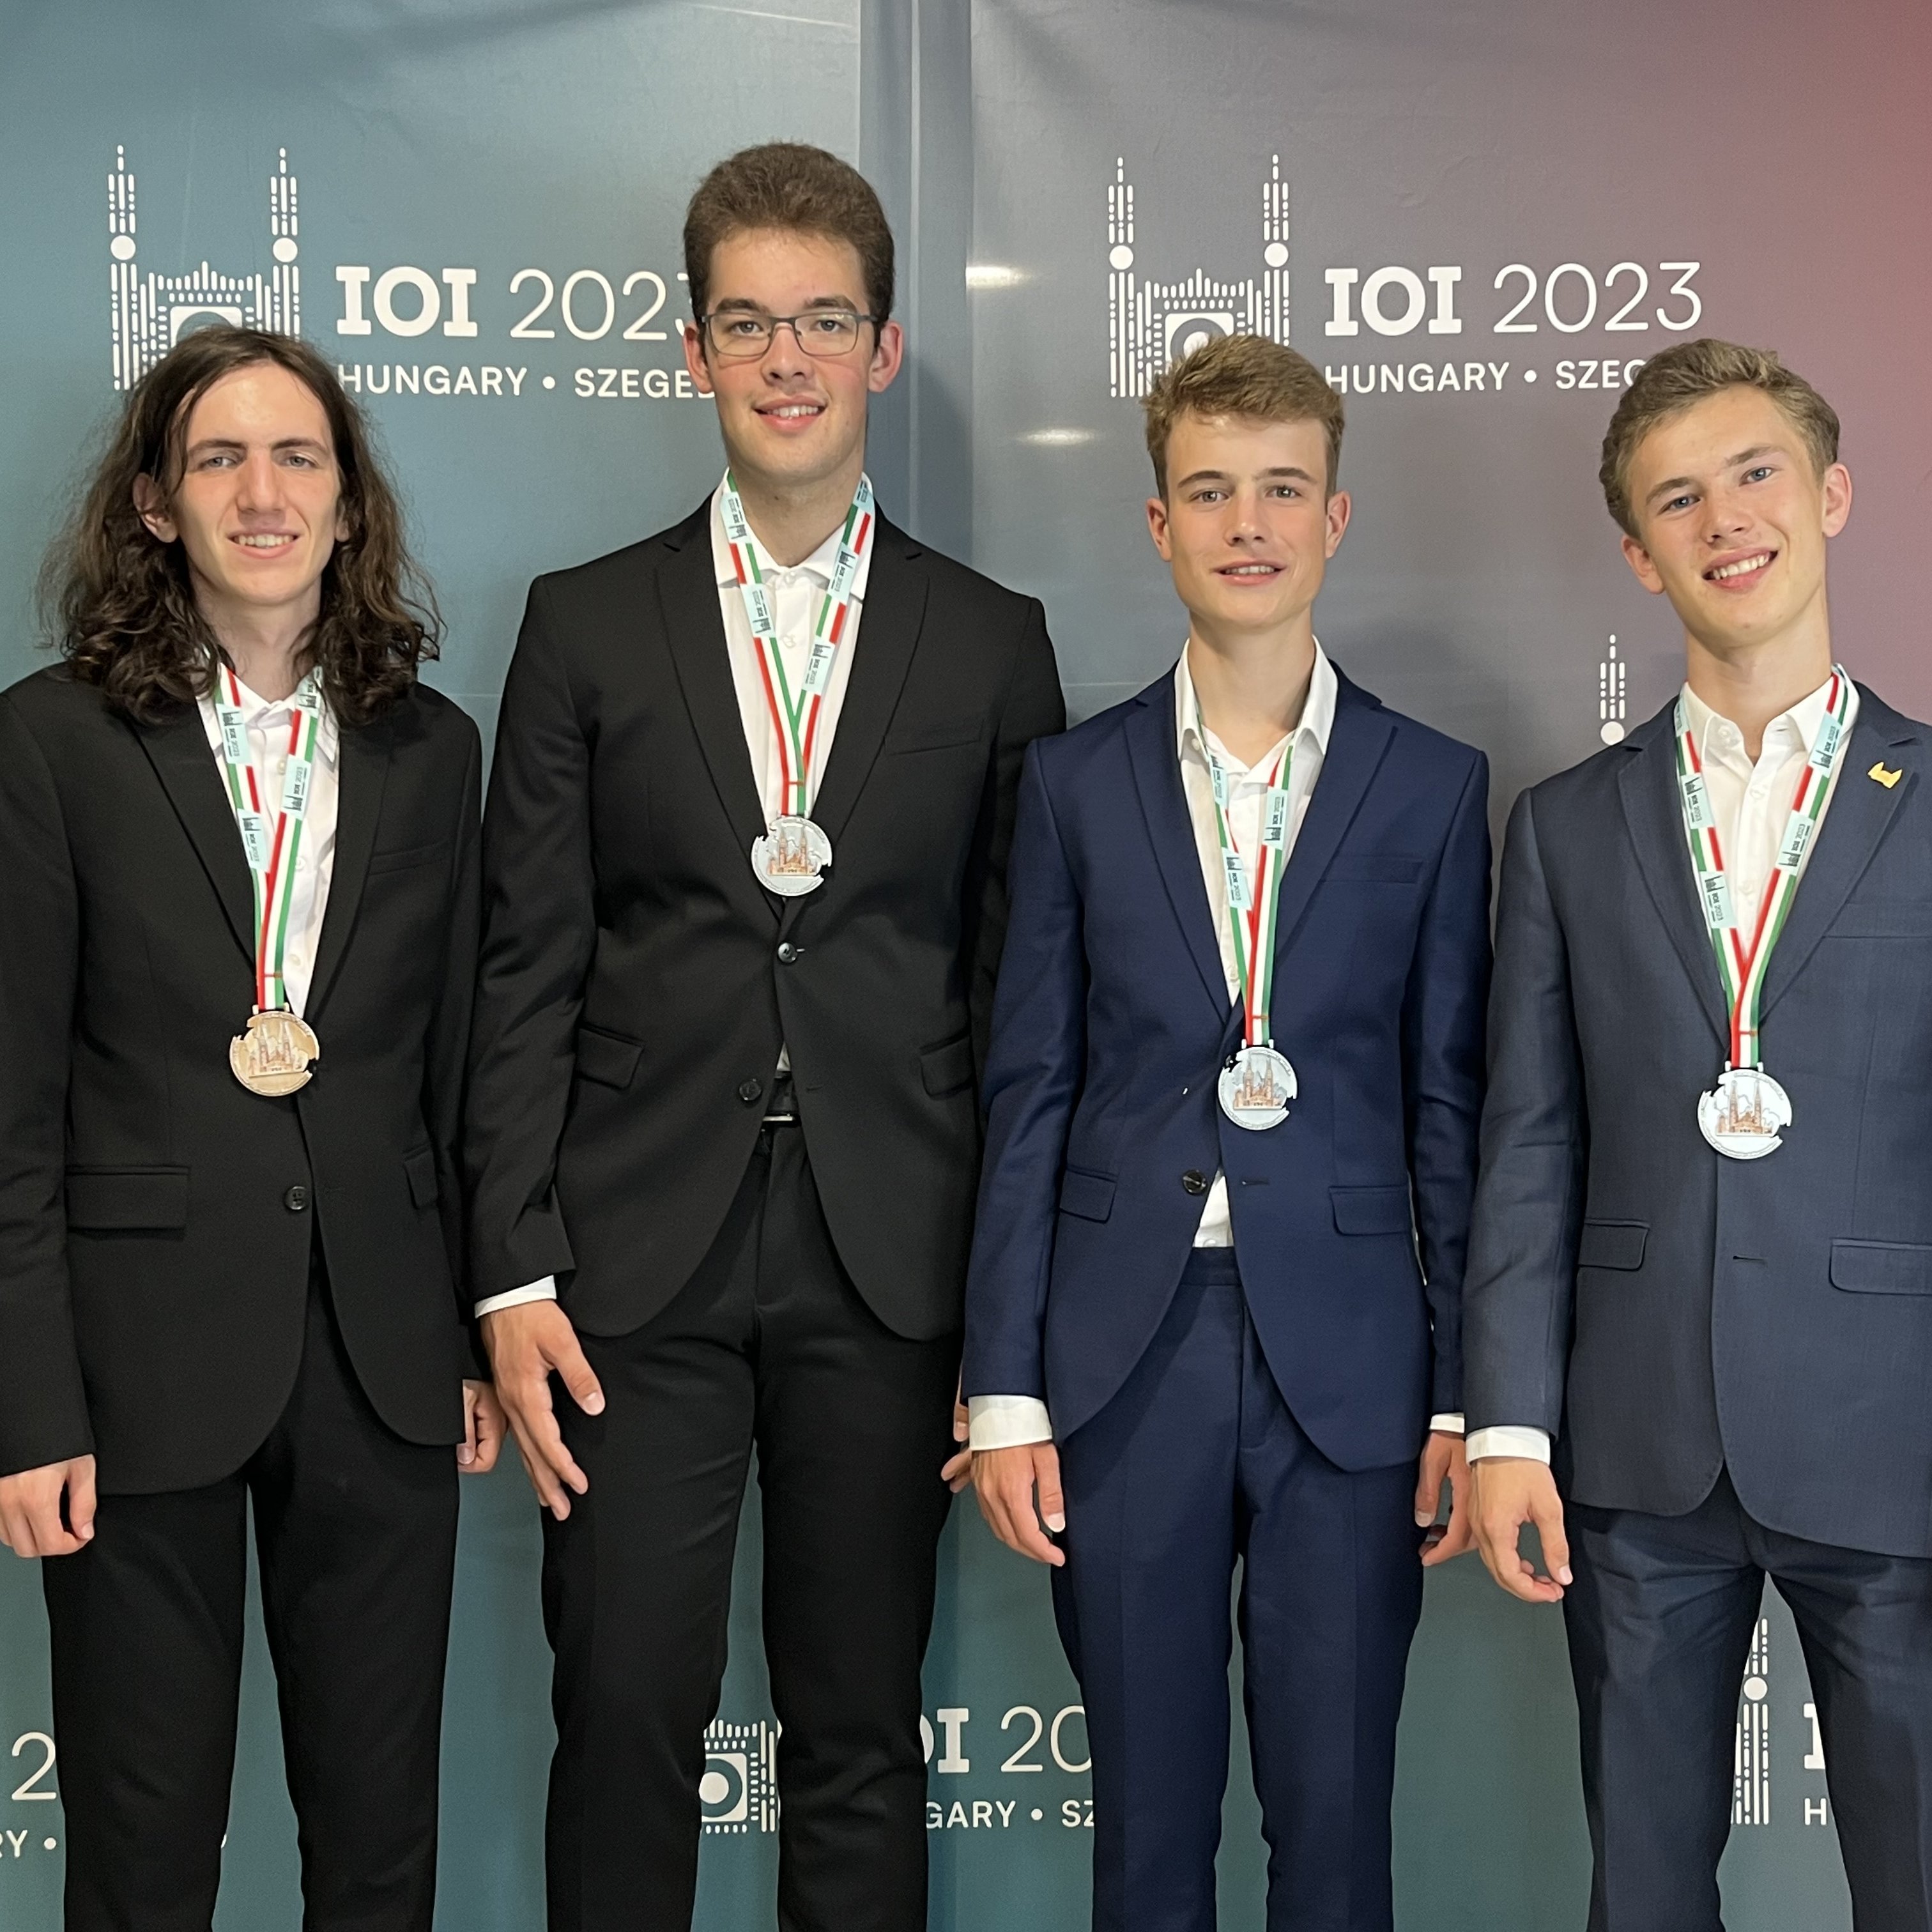 Das deutsche Team bei der IOI 2023 mit Medaillen.